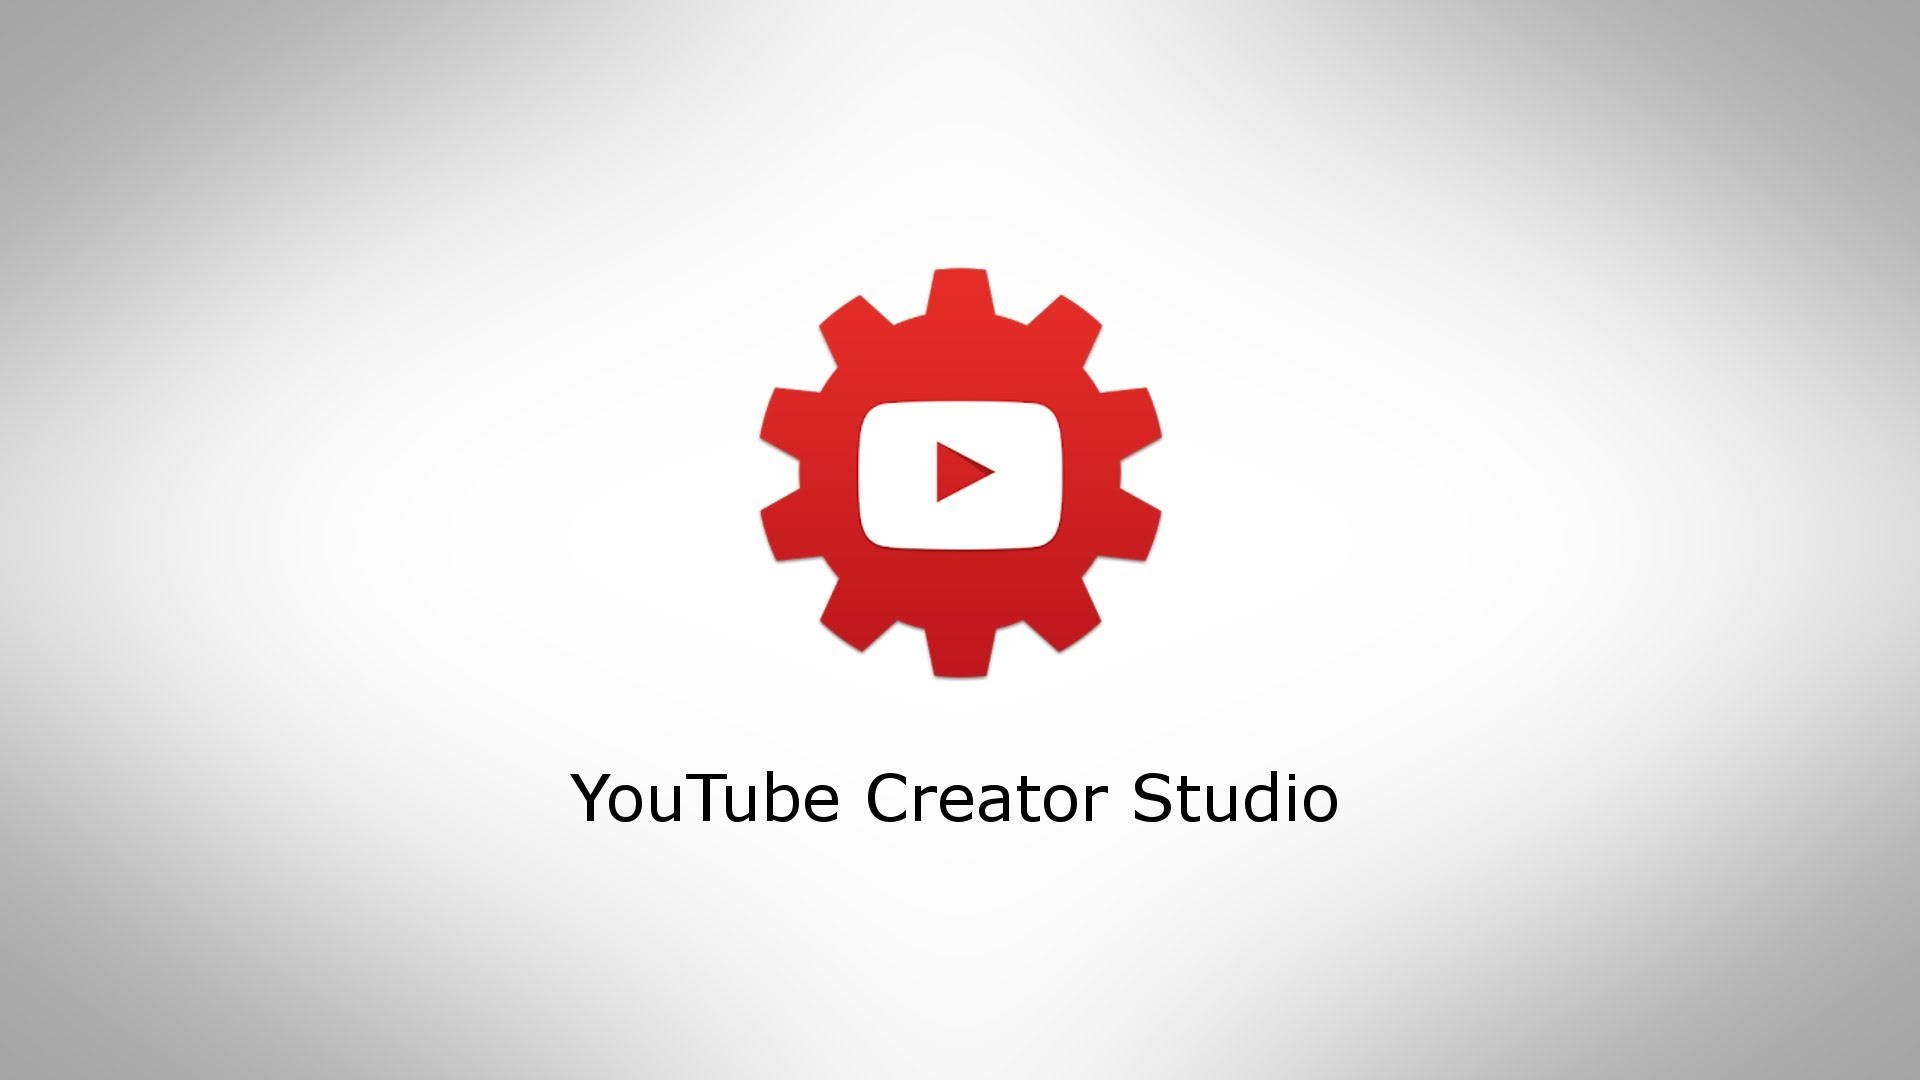 Ютуб канал дом студио. Youtube Studio. Ютуб студия. Youtube creator Studio. Творческая студия ютуб.